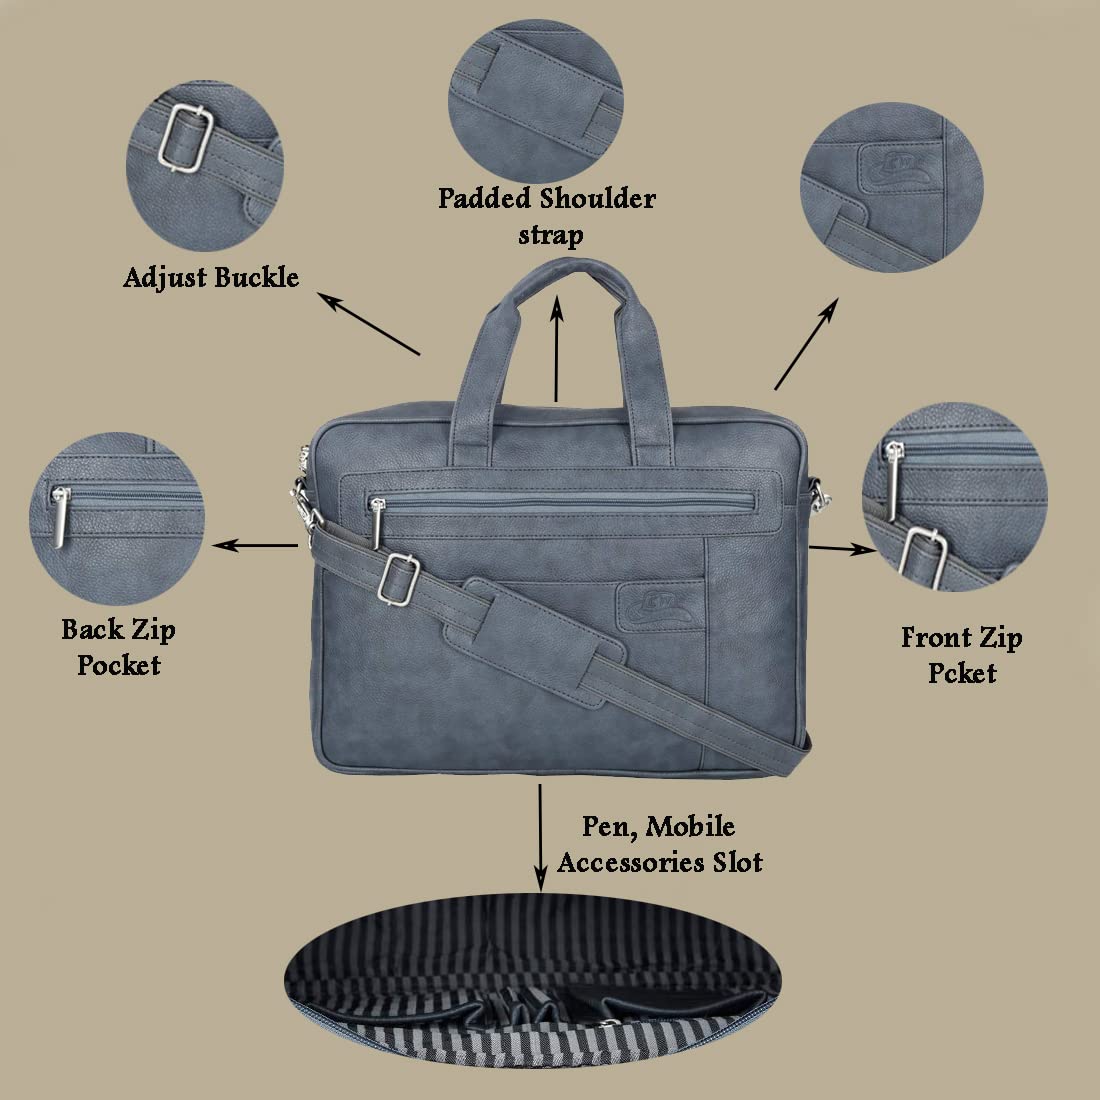 Leather World Pu Leather 15.6 inch Laptop Bag for Men Office Bag Briefcase Messenger Bag Grey Bag